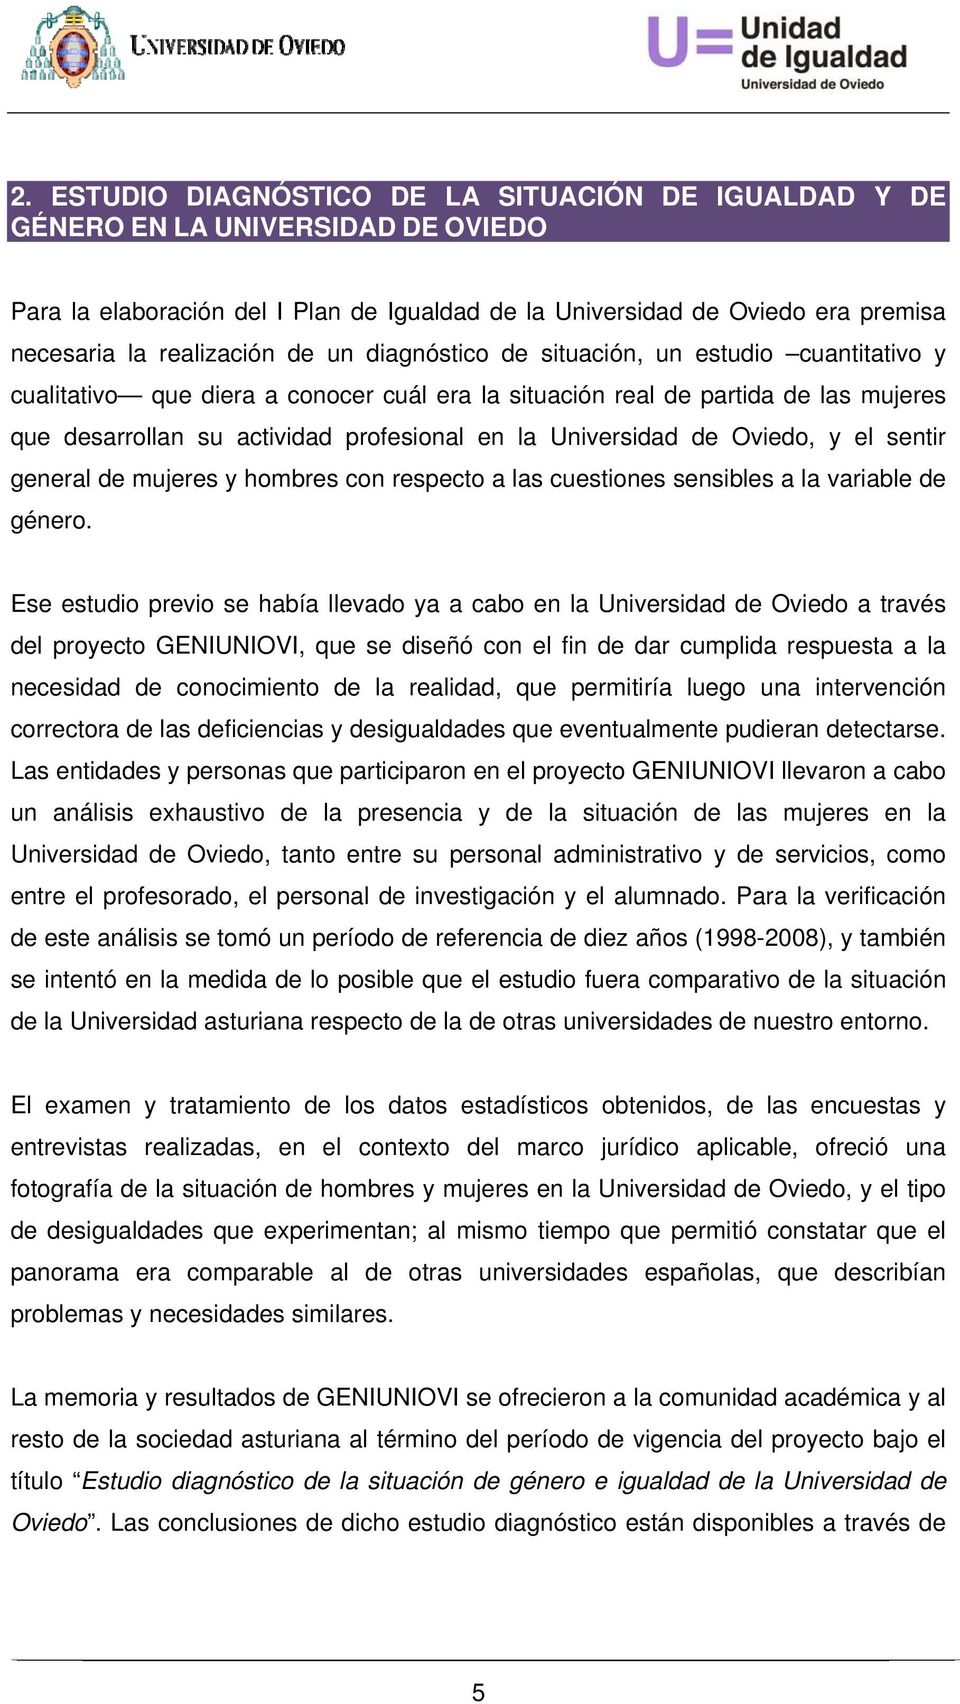 Universidad de Oviedo, y el sentir general de mujeres y hombres con respecto a las cuestiones sensibles a la variable de género.